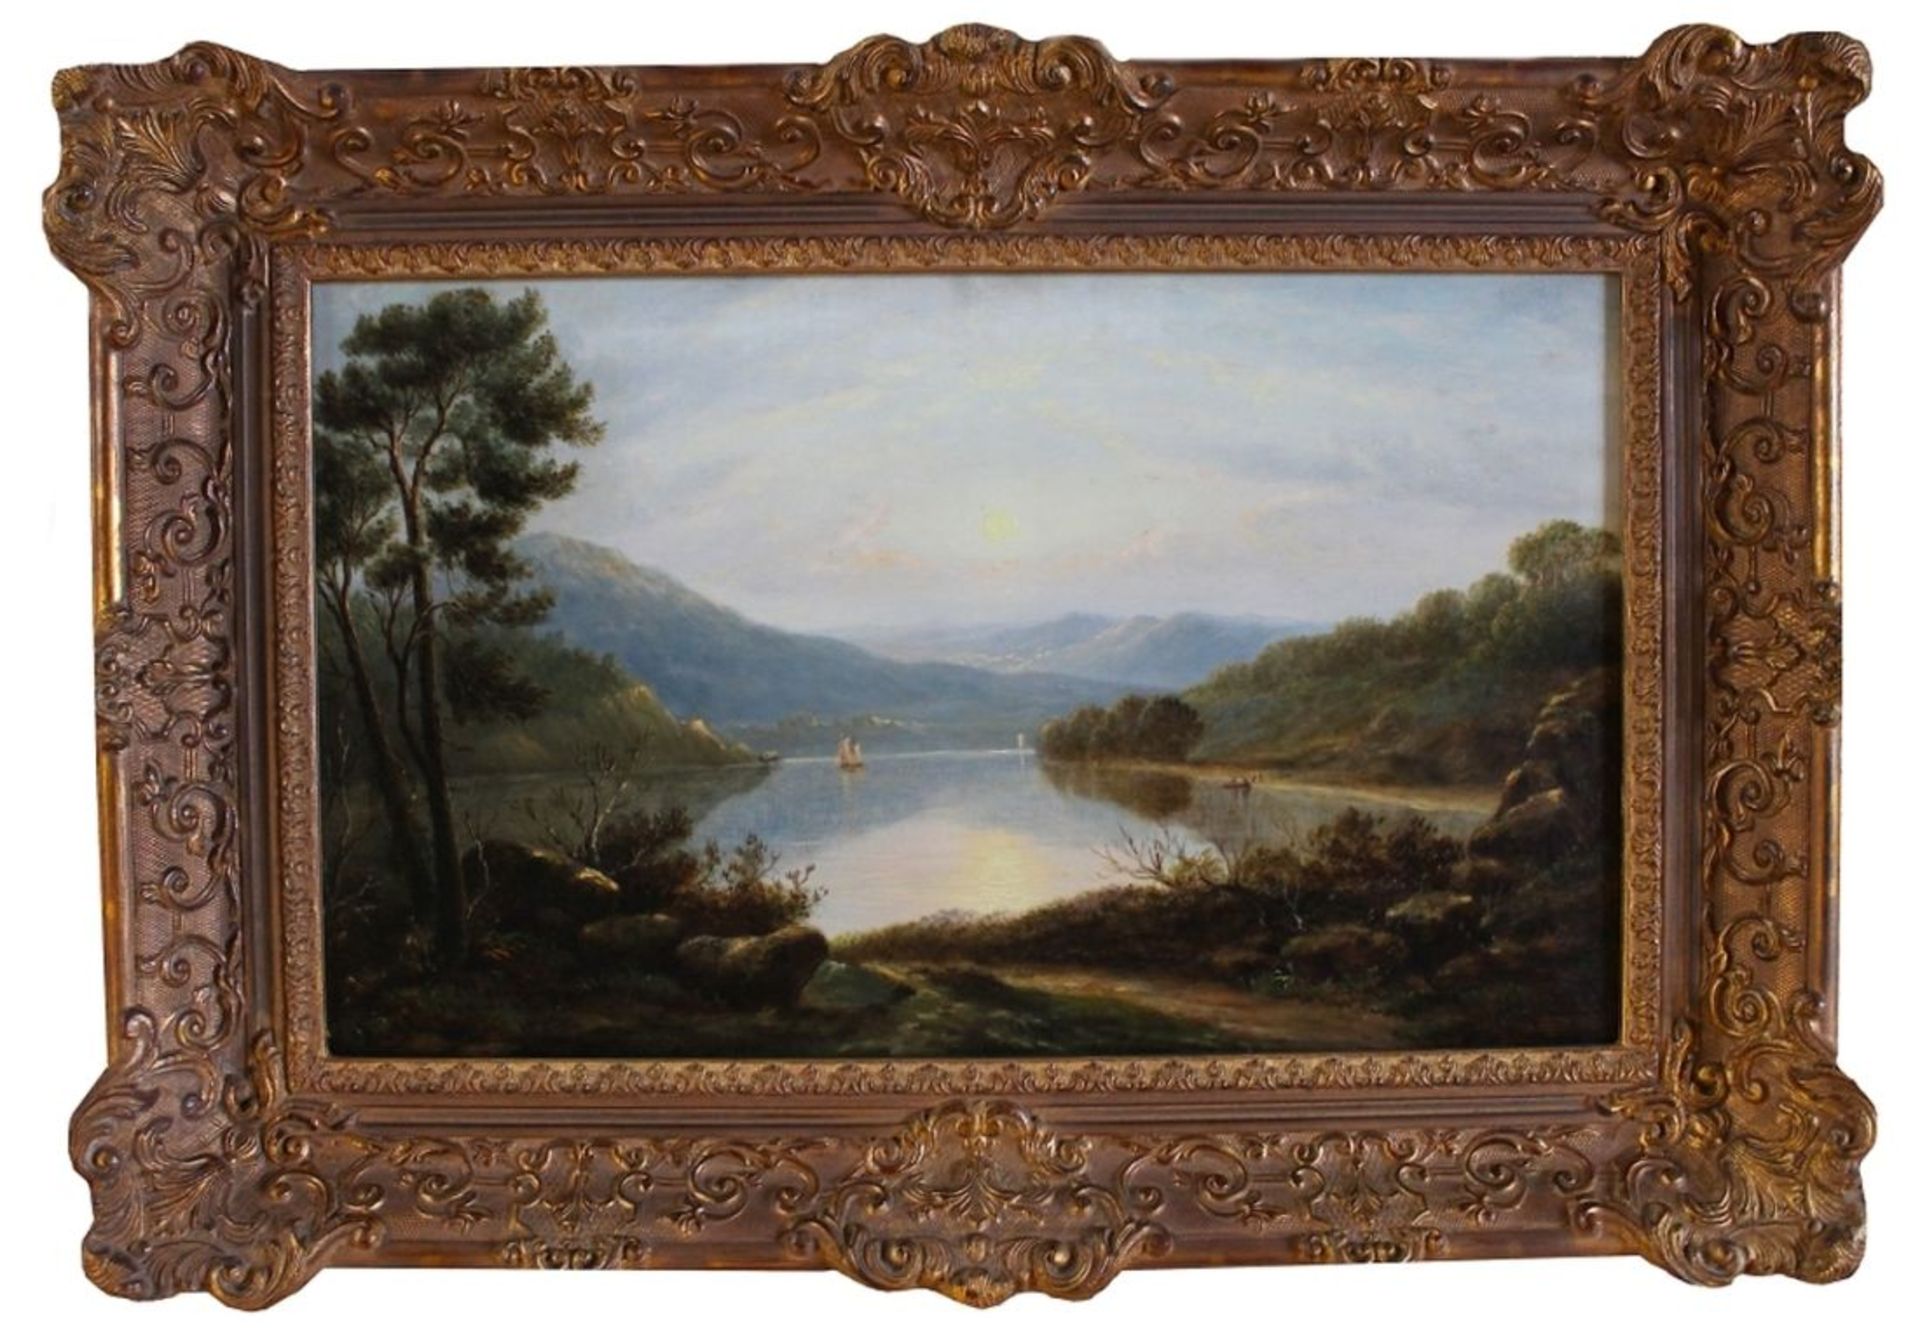 Gemälde - Romantiker (19.Jahrhundert) "Alpenländische Landschaft mit Seeidylle und Segelschiffen",